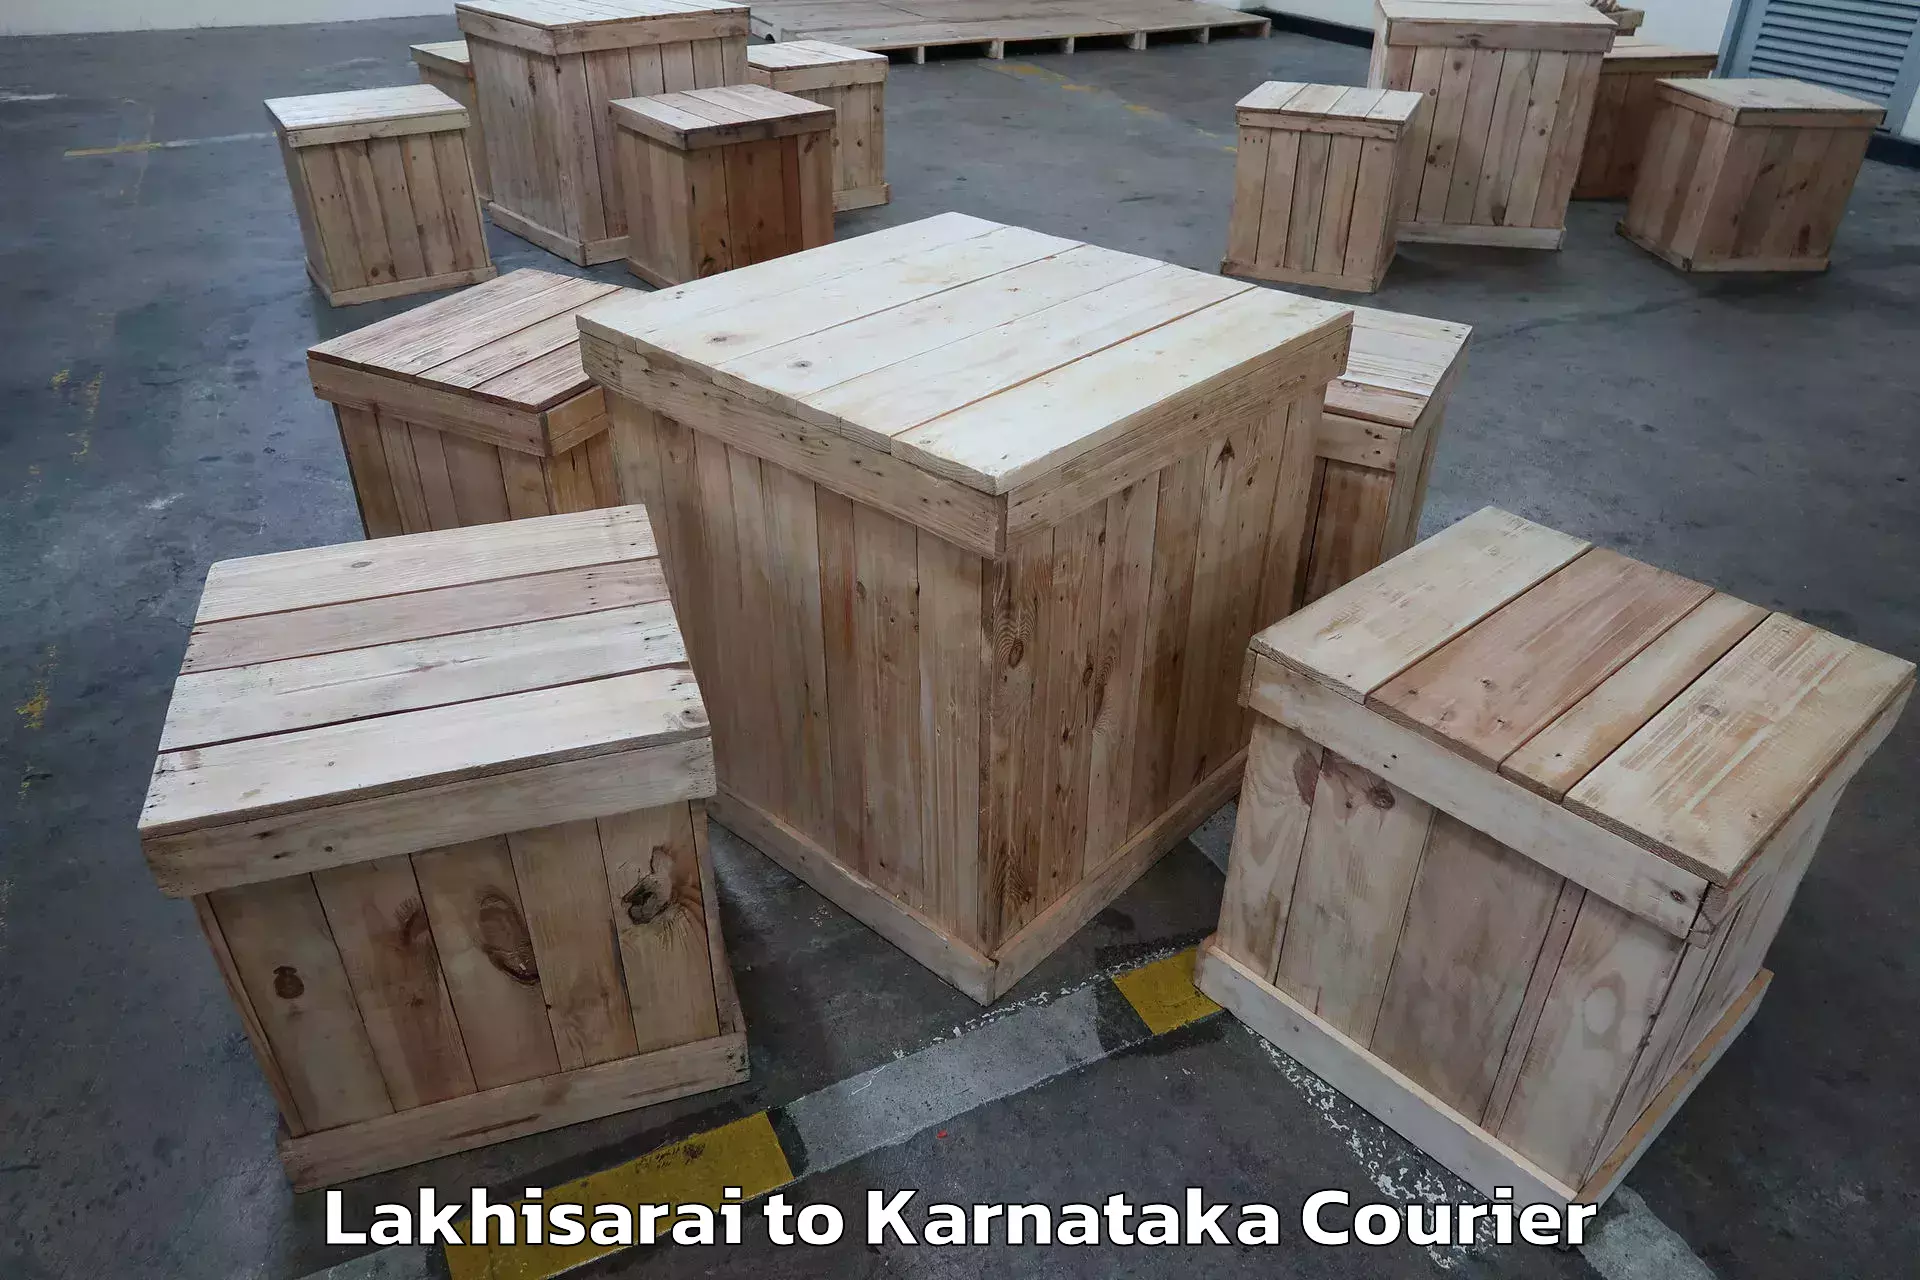 Furniture moving experts Lakhisarai to Karnataka